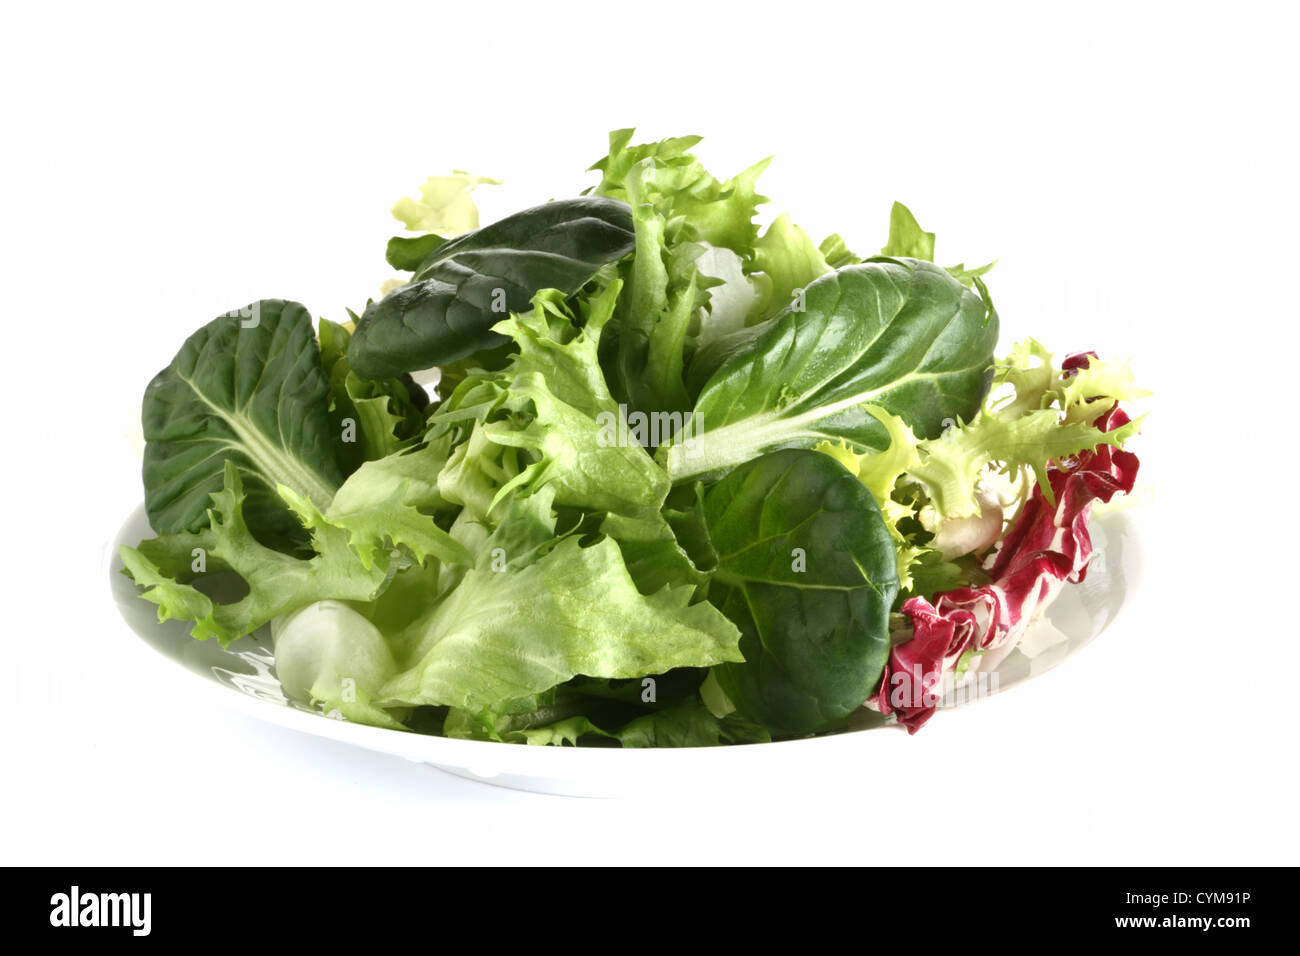 Salade de légumes verts frais tatsoi sur plaque, isolated on white Banque D'Images